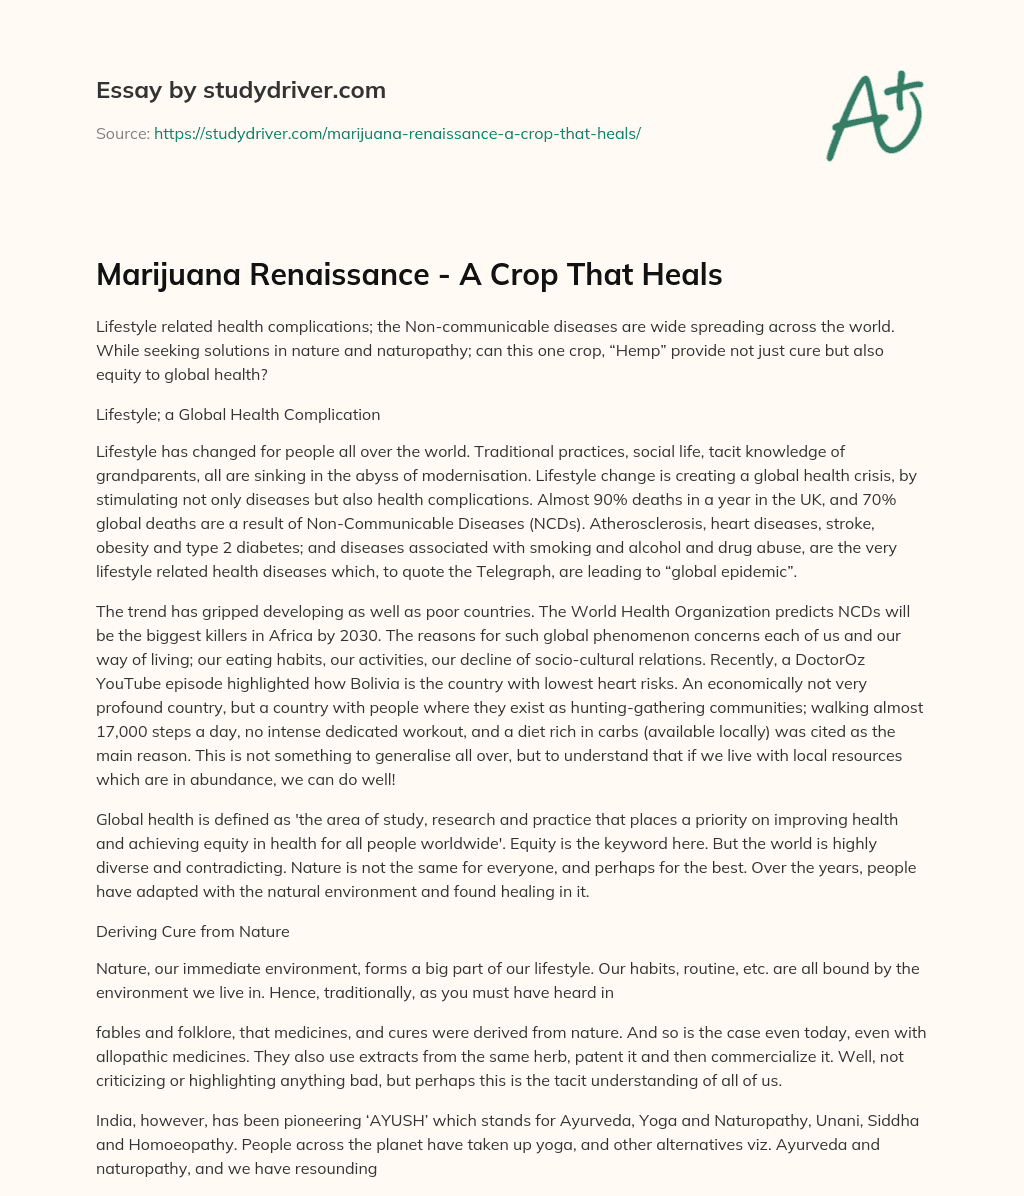 Marijuana Renaissance – a Crop that Heals essay